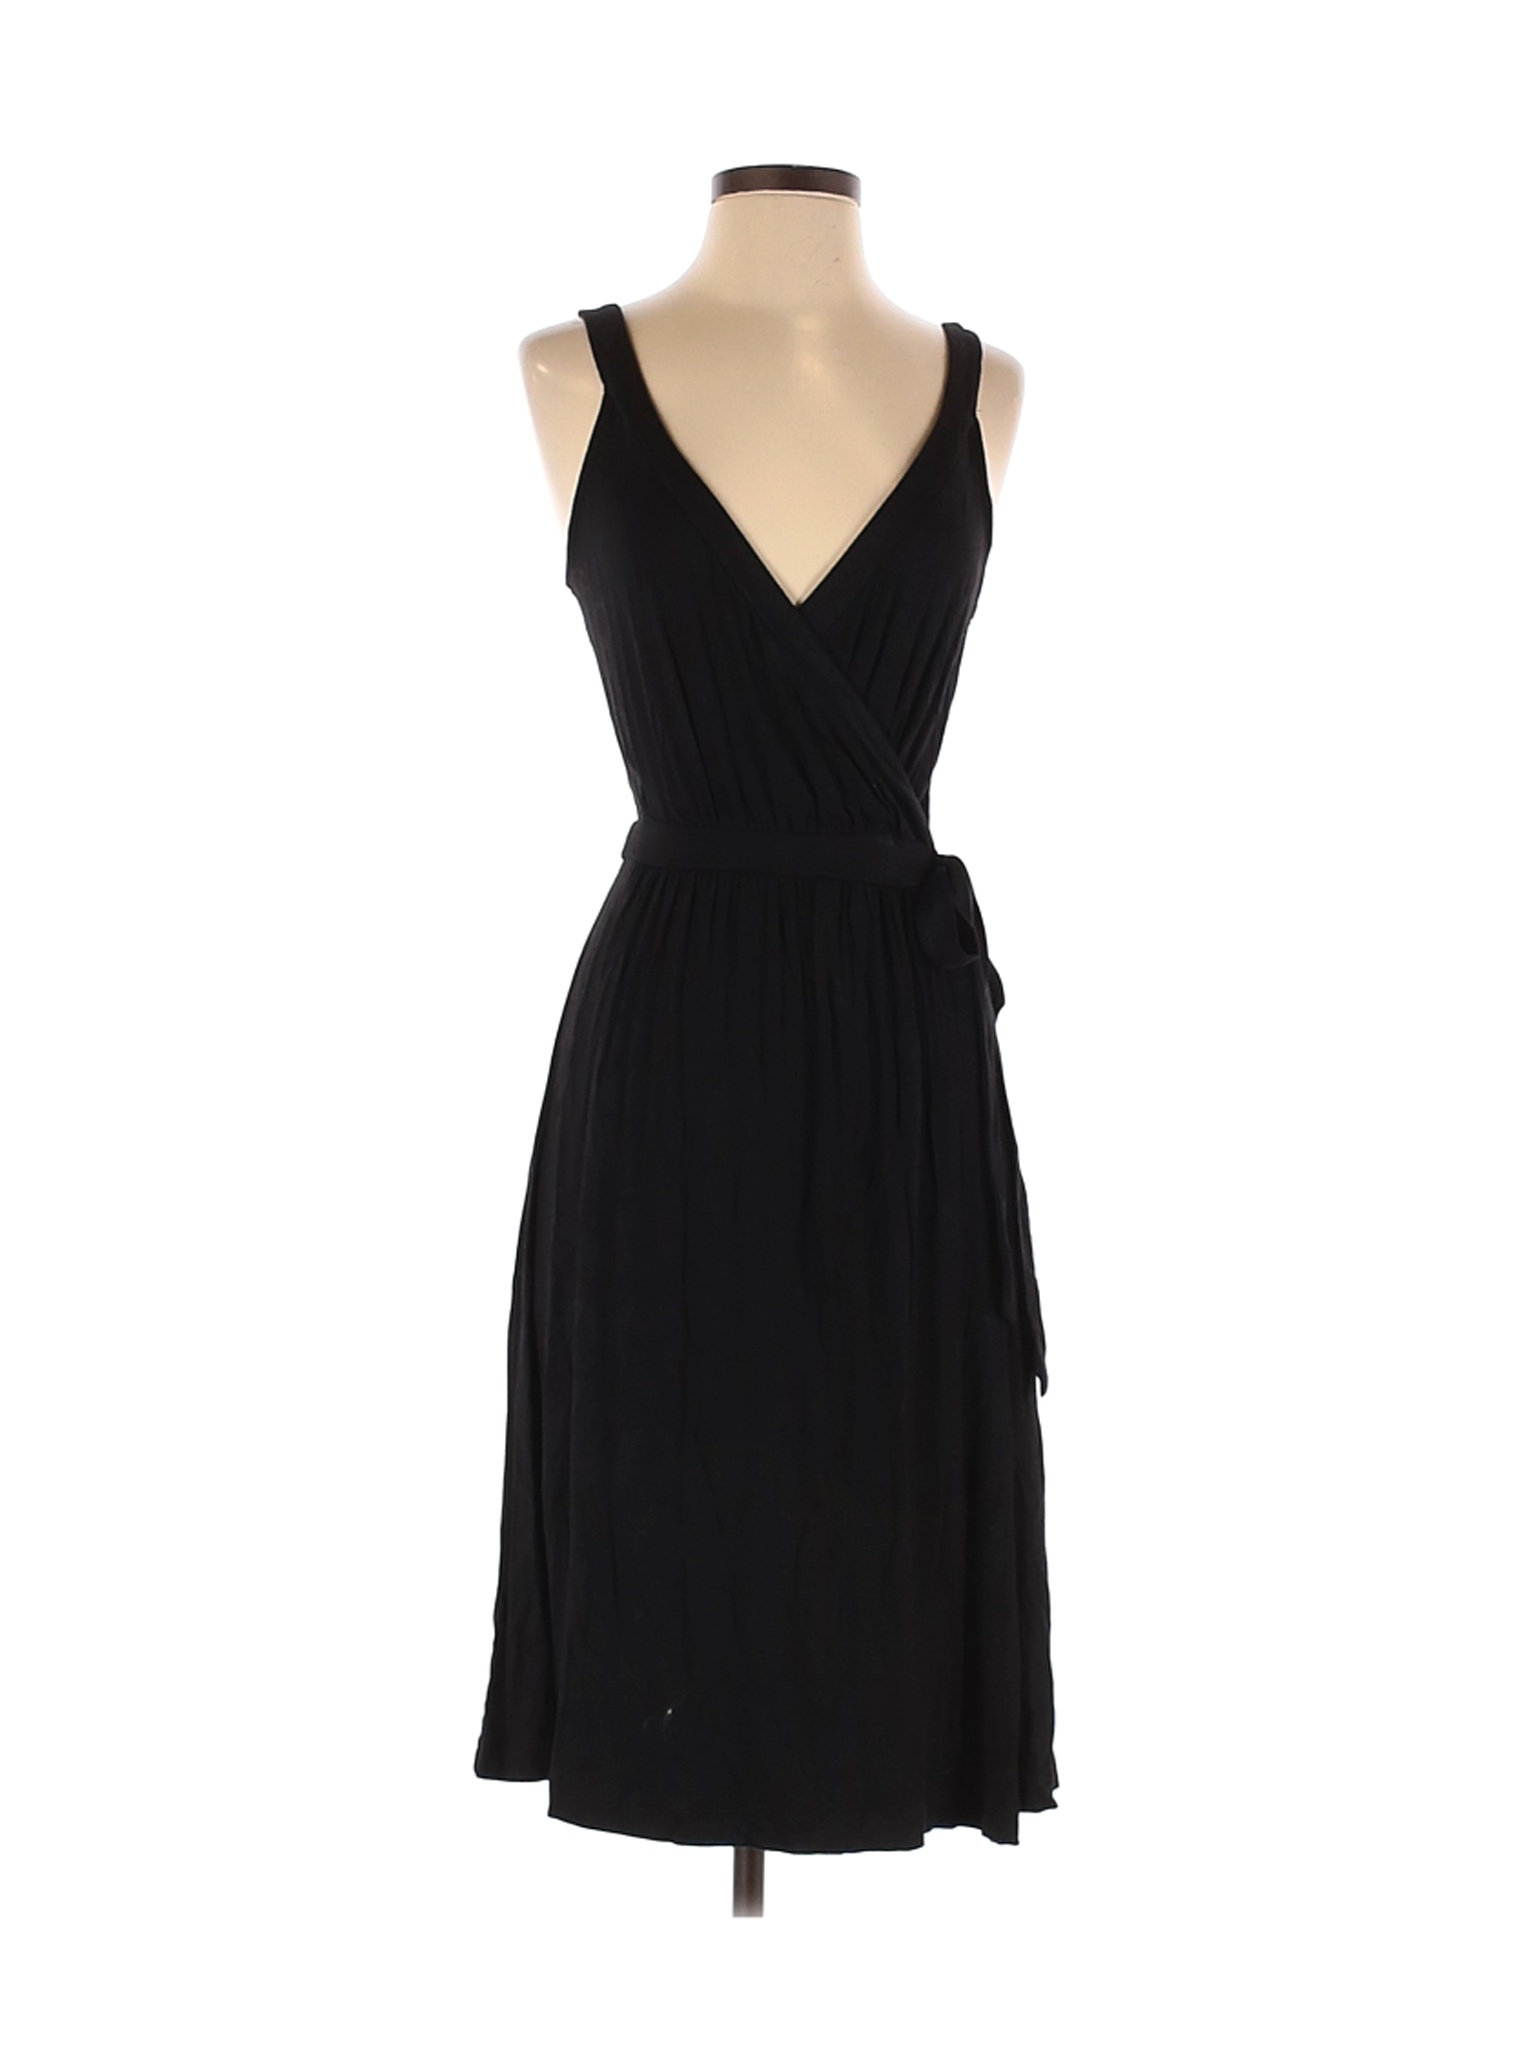 Old Navy Women Black Casual Dress S | eBay